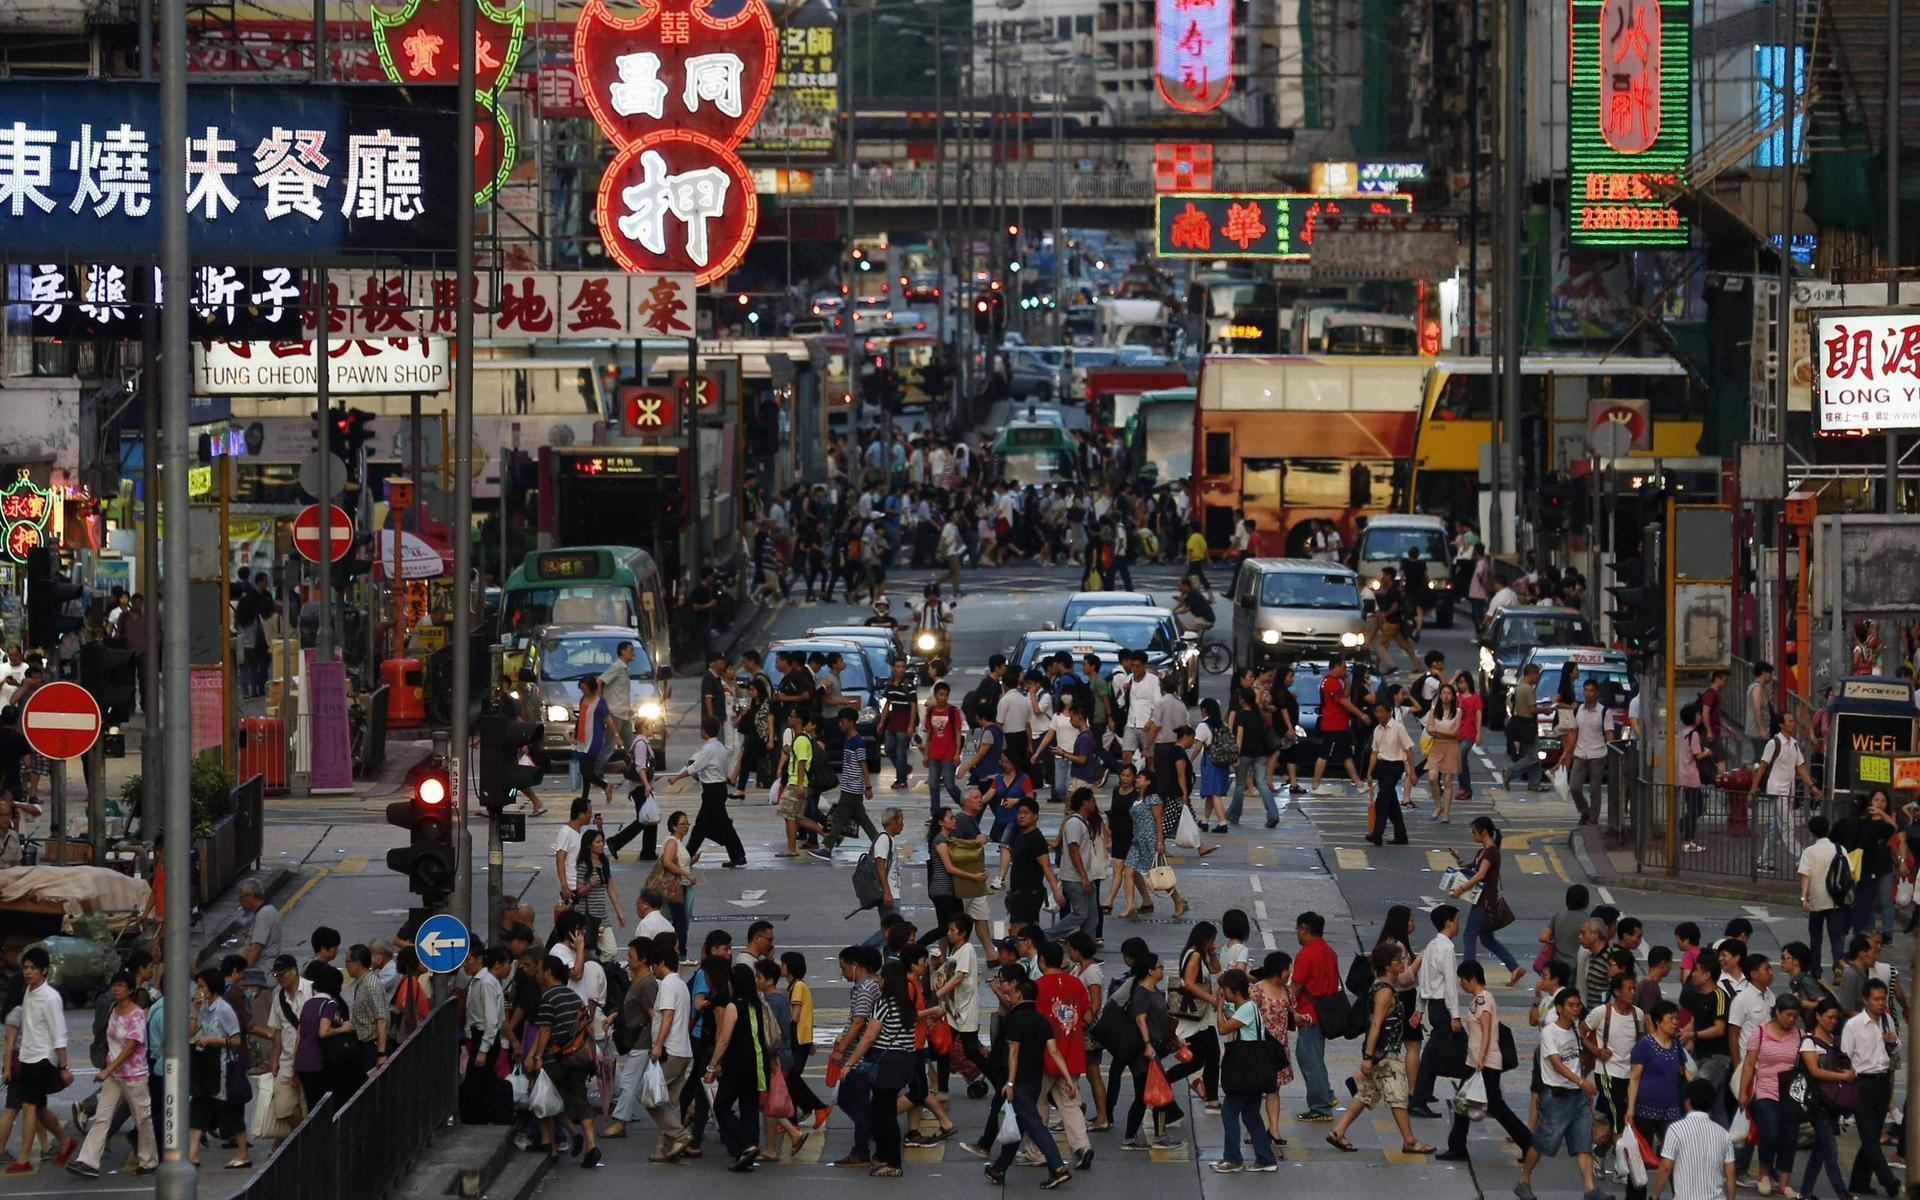 Likt andra storstäder har bostadsmarknaden Hongkong de senaste åren varit glödhet och den senaste tiden har exklusiva boenden i staden sålts för rekordbelopp. Hongkong räknas som en av världens dyraste städer att leva i.